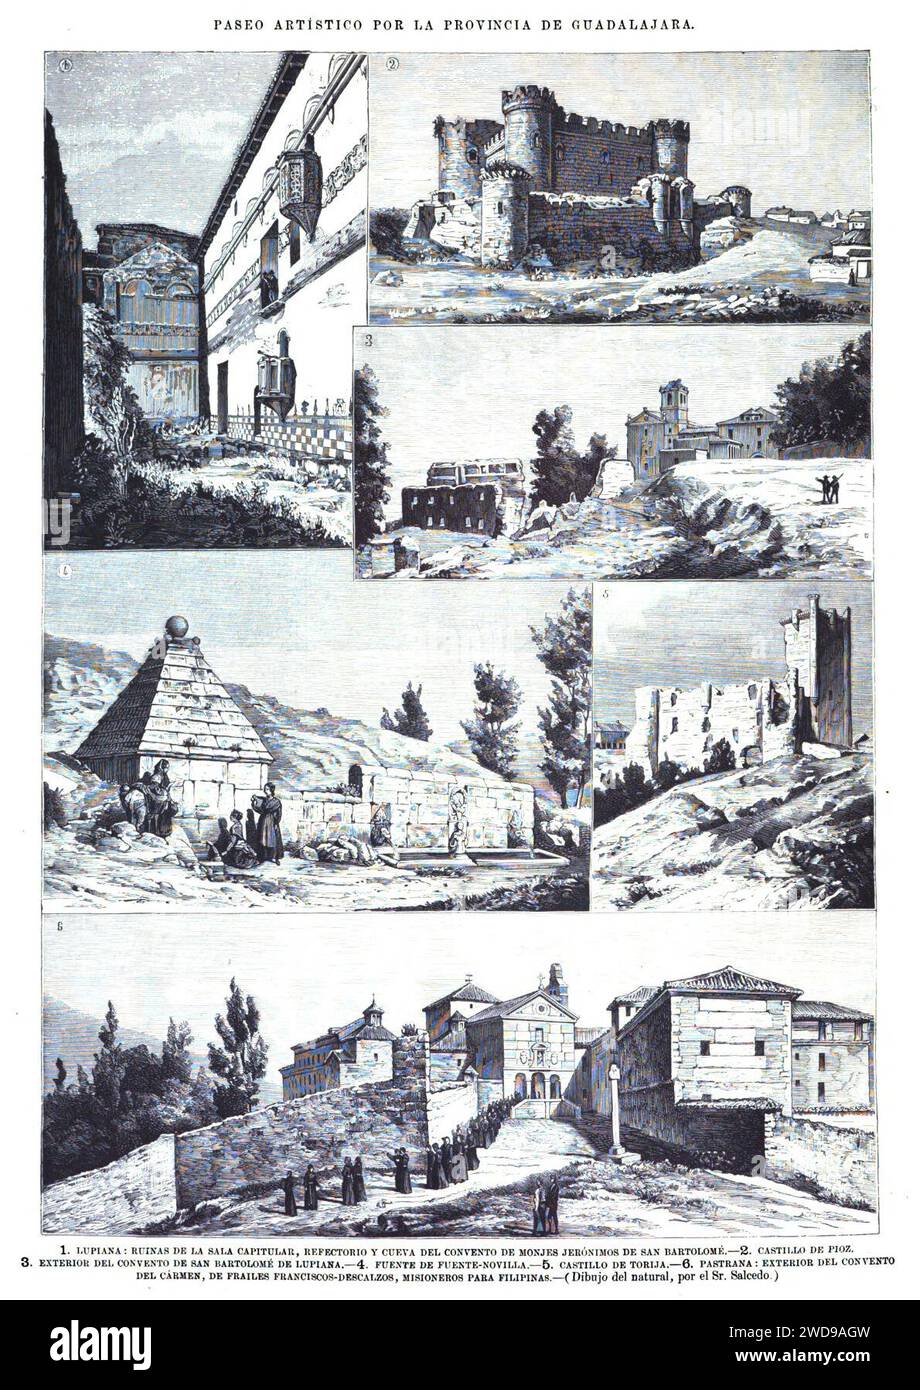 1878-11-22, La Ilustración Española y Americana, Paseo artístico por la provincia de Guadalajara. Stock Photo